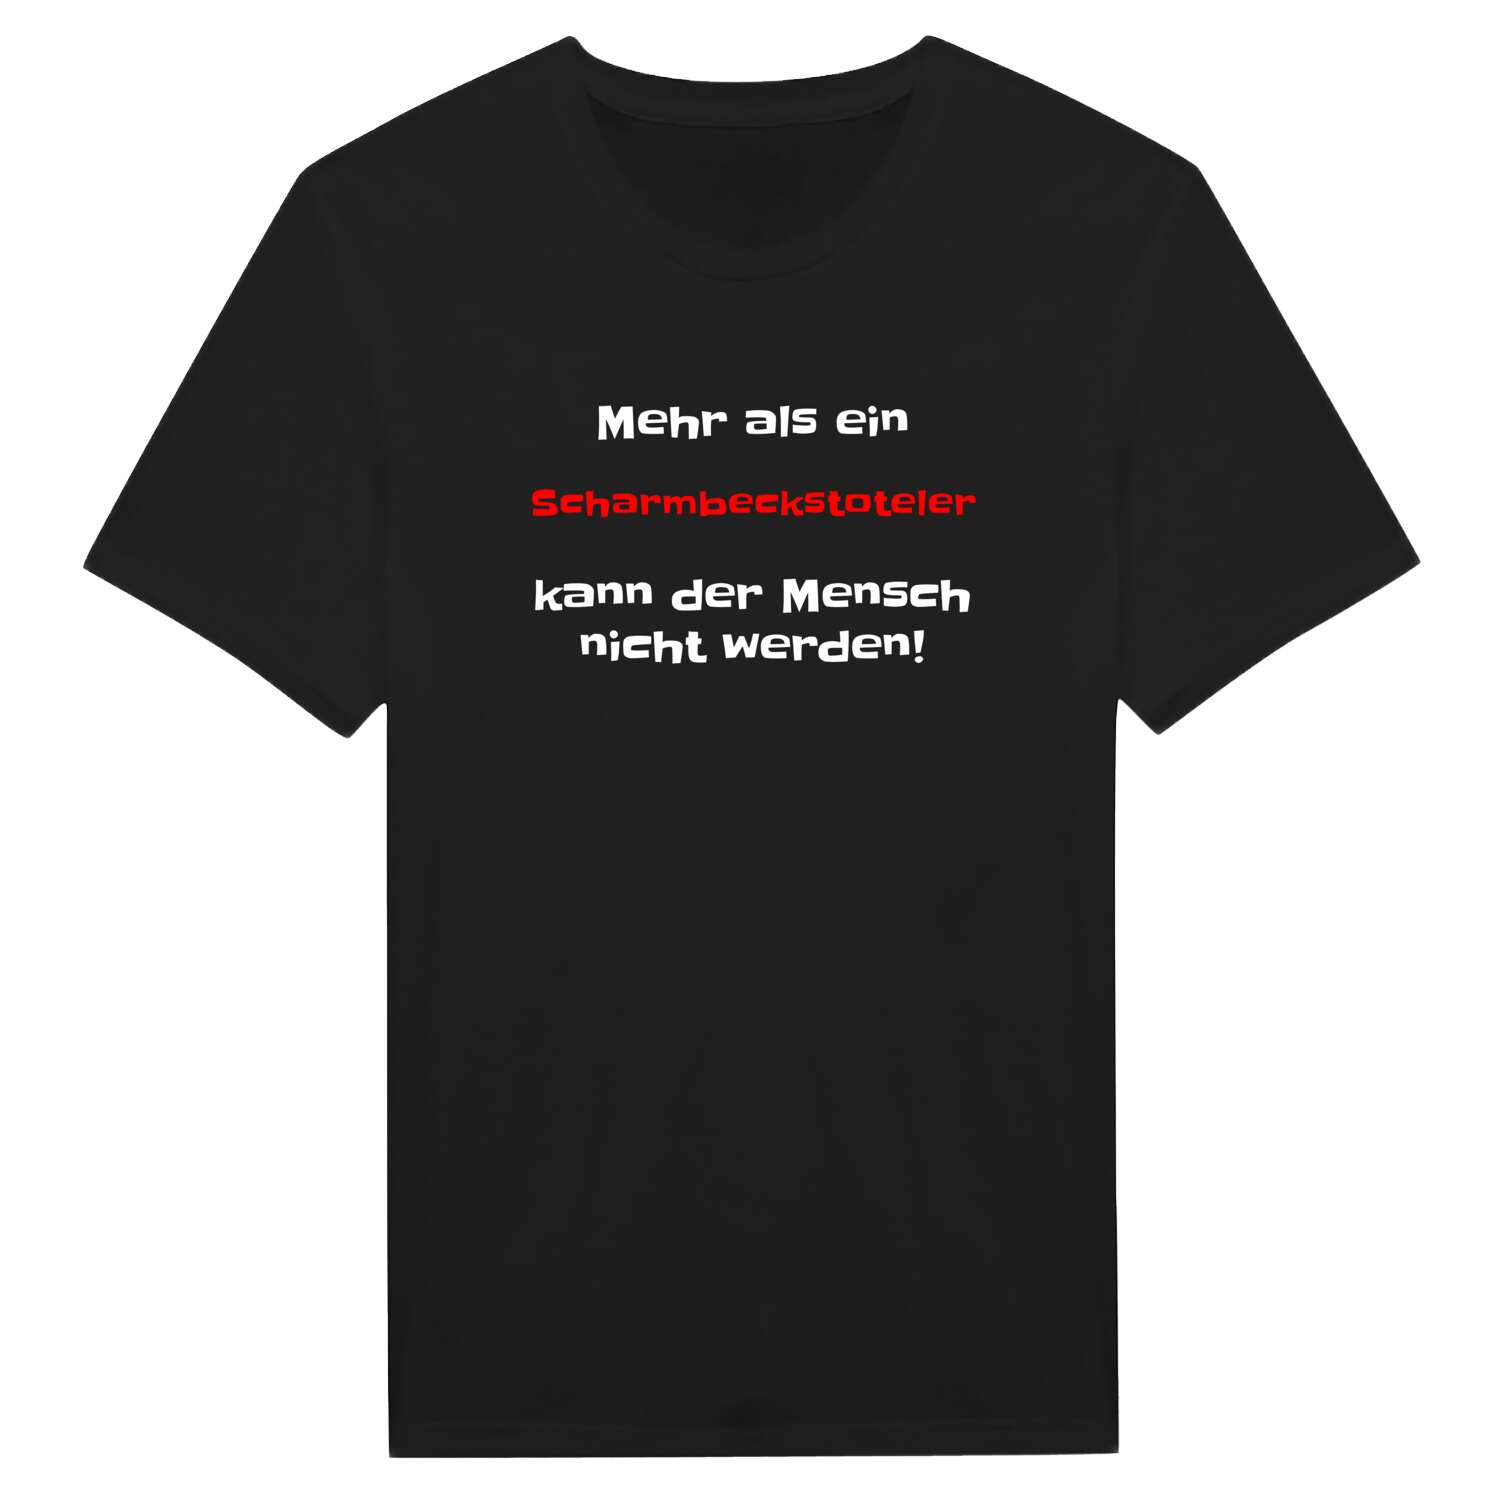 Scharmbeckstotel T-Shirt »Mehr als ein«